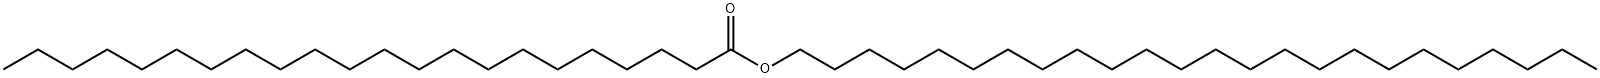 Docosanoic acid tetracosyl ester|Docosanoic acid tetracosyl ester